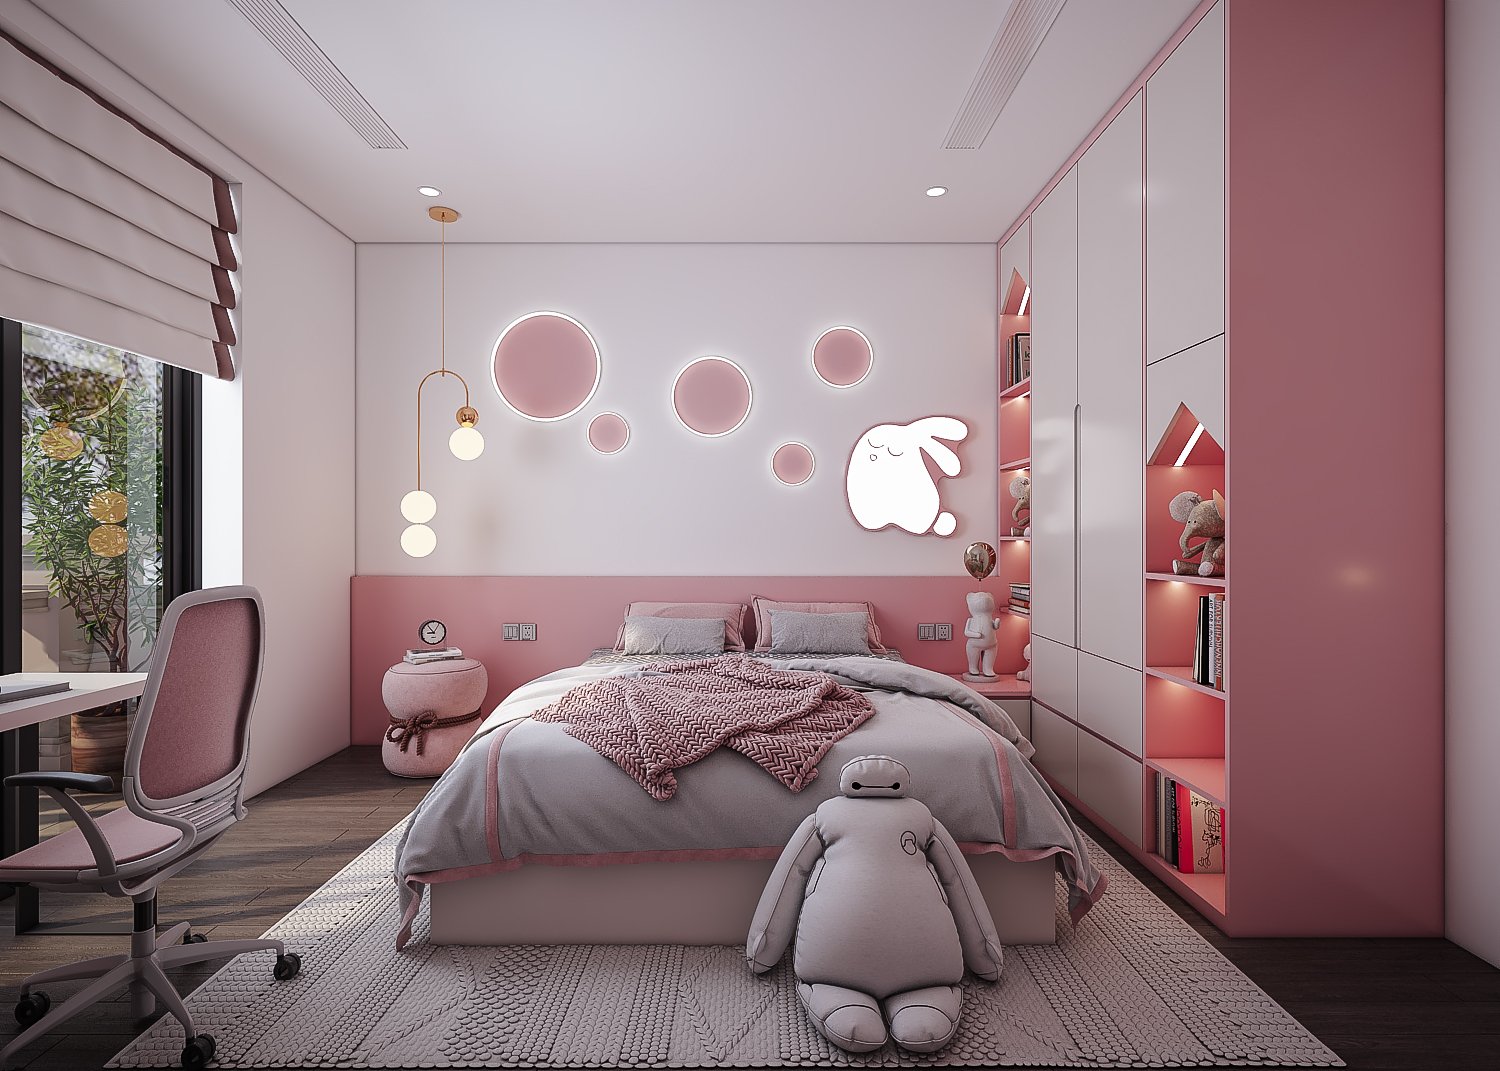 Phòng ngủ số 4 dành cho bé gái với tone màu hồng - trắng chủ đạo